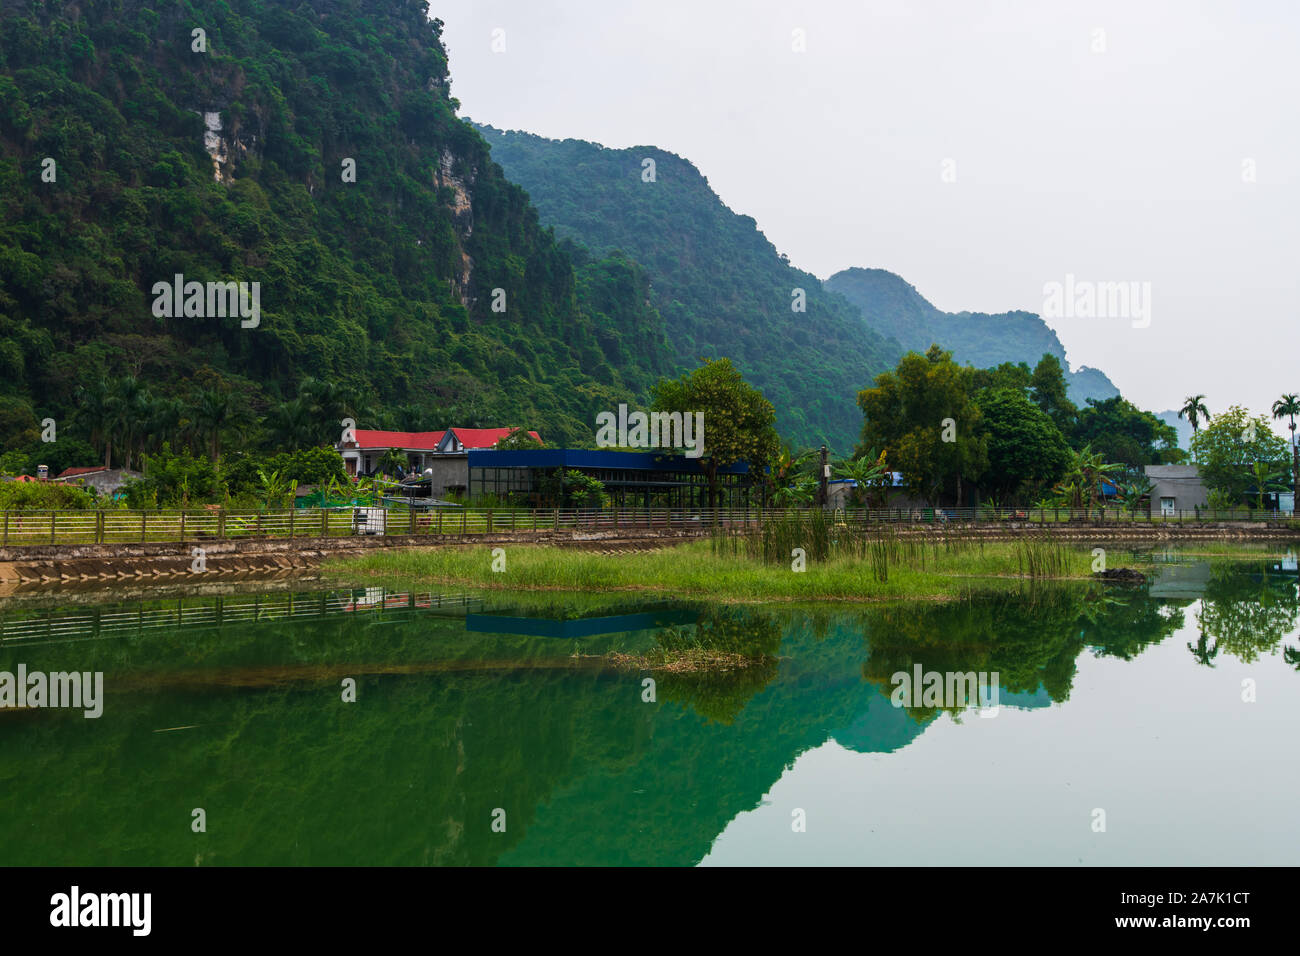 Berge spiegeln sich in eine Glut grüner See auf der versteckten Insel Cat Ba, die regelmäßig mit dem Boot Touren rund um Ha Long Bay besucht wird Stockfoto